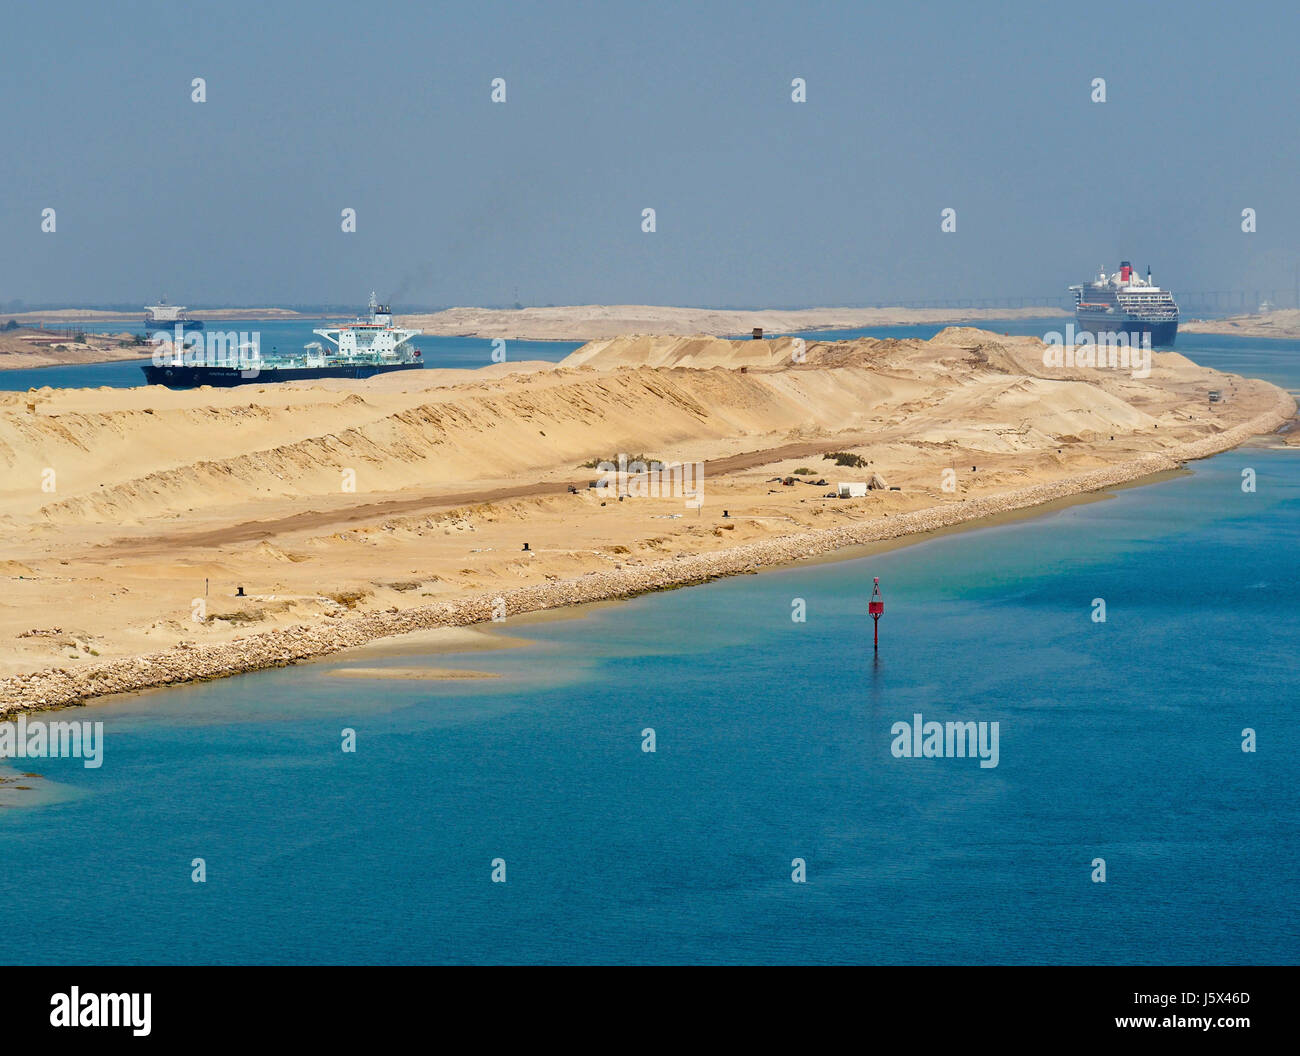 Neuer Abschnitt des Suez-Kanals mit Gegenverkehr, Queen Mary 2 Richtung Norden im rechten Kanal und Öltanker, die Richtung Süden auf der linken Seite. Stockfoto